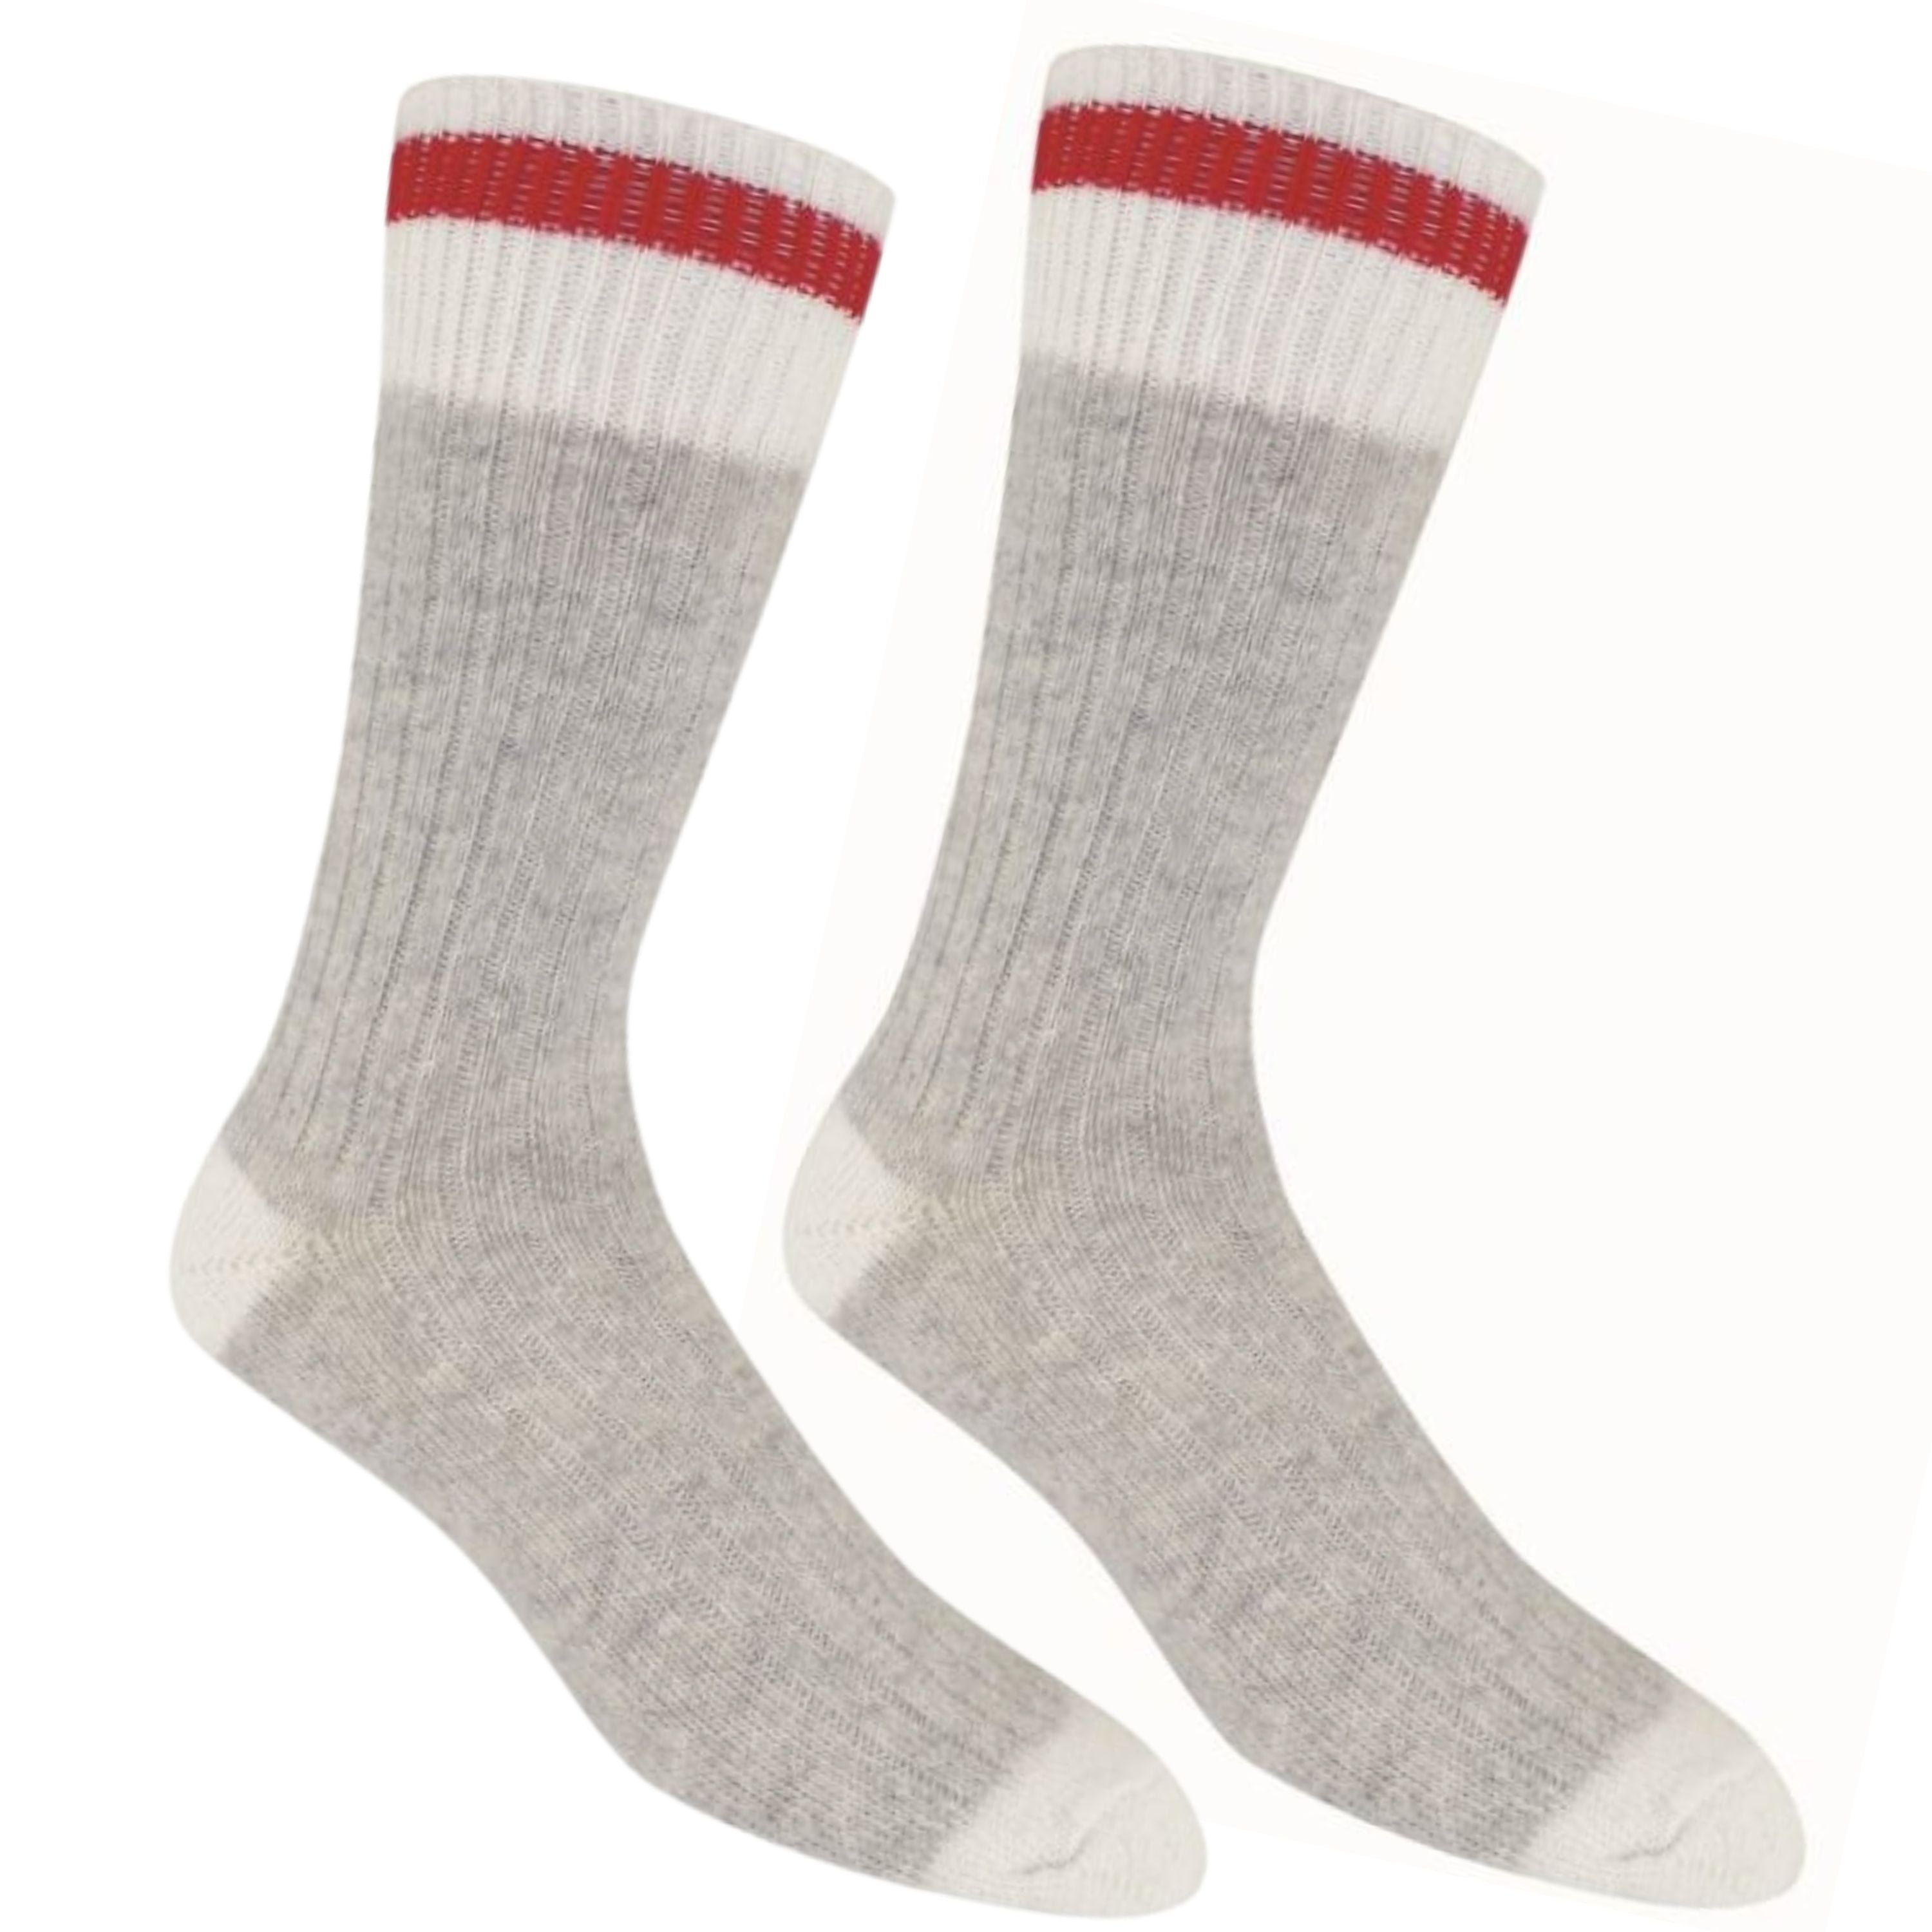 Wool socks - Unisex